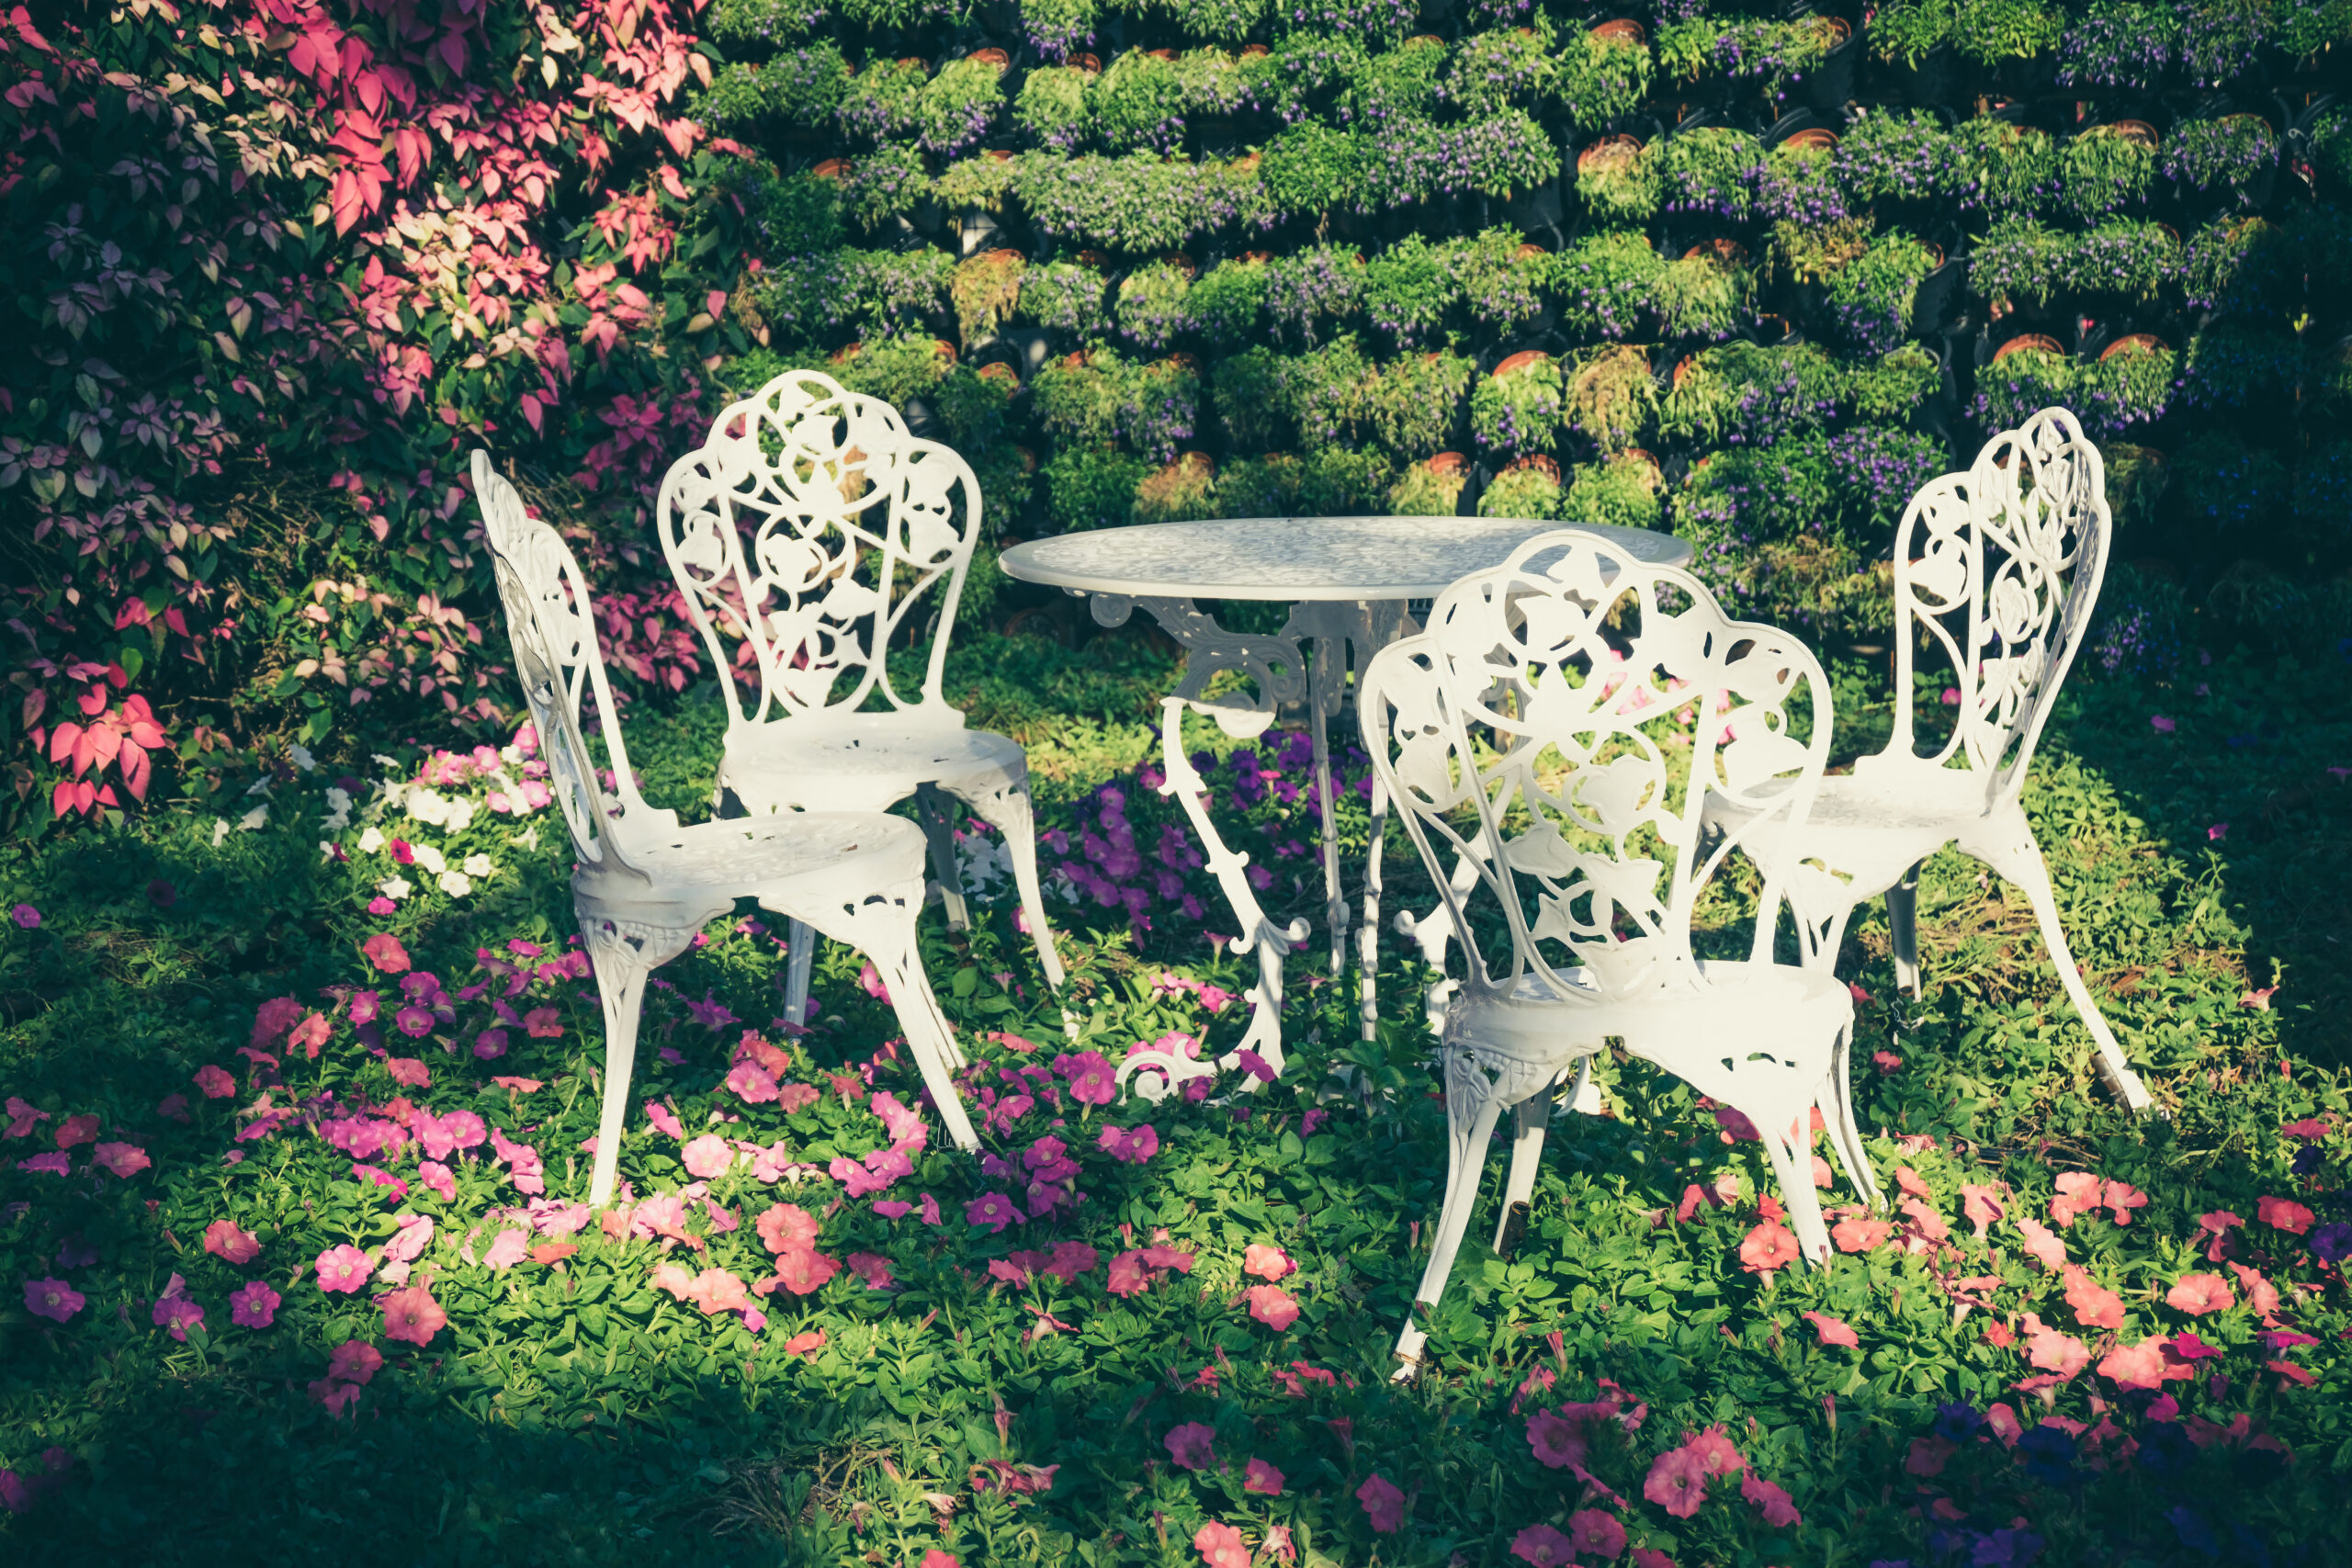 Białe meble w stylu vintage dodają subtelności i lekkości temu ogrodowi, tworząc przytulne miejsce do odpoczynku i relaksu w pięknej scenerii